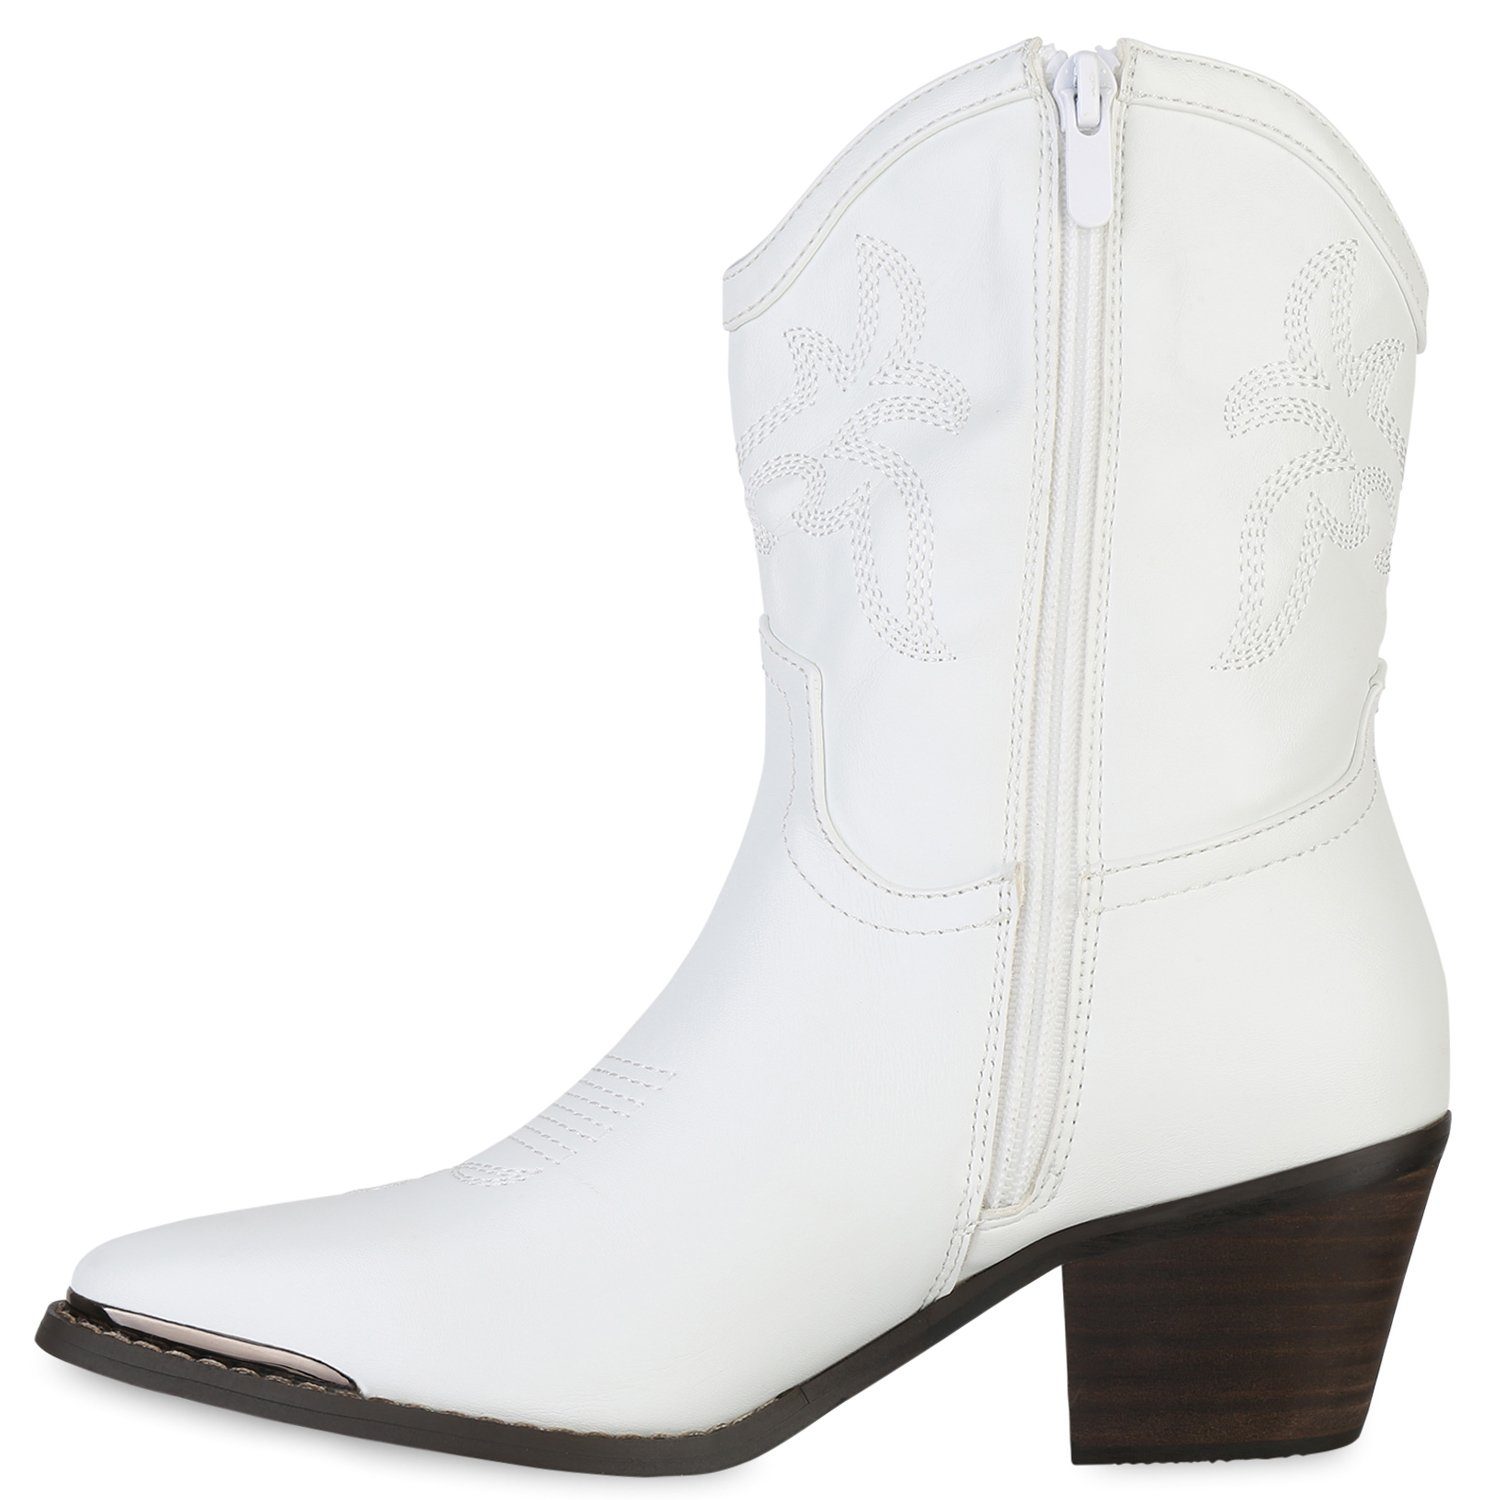 HILL Bequeme Boots Cowboy Schuhe 839934 VAN Weiss